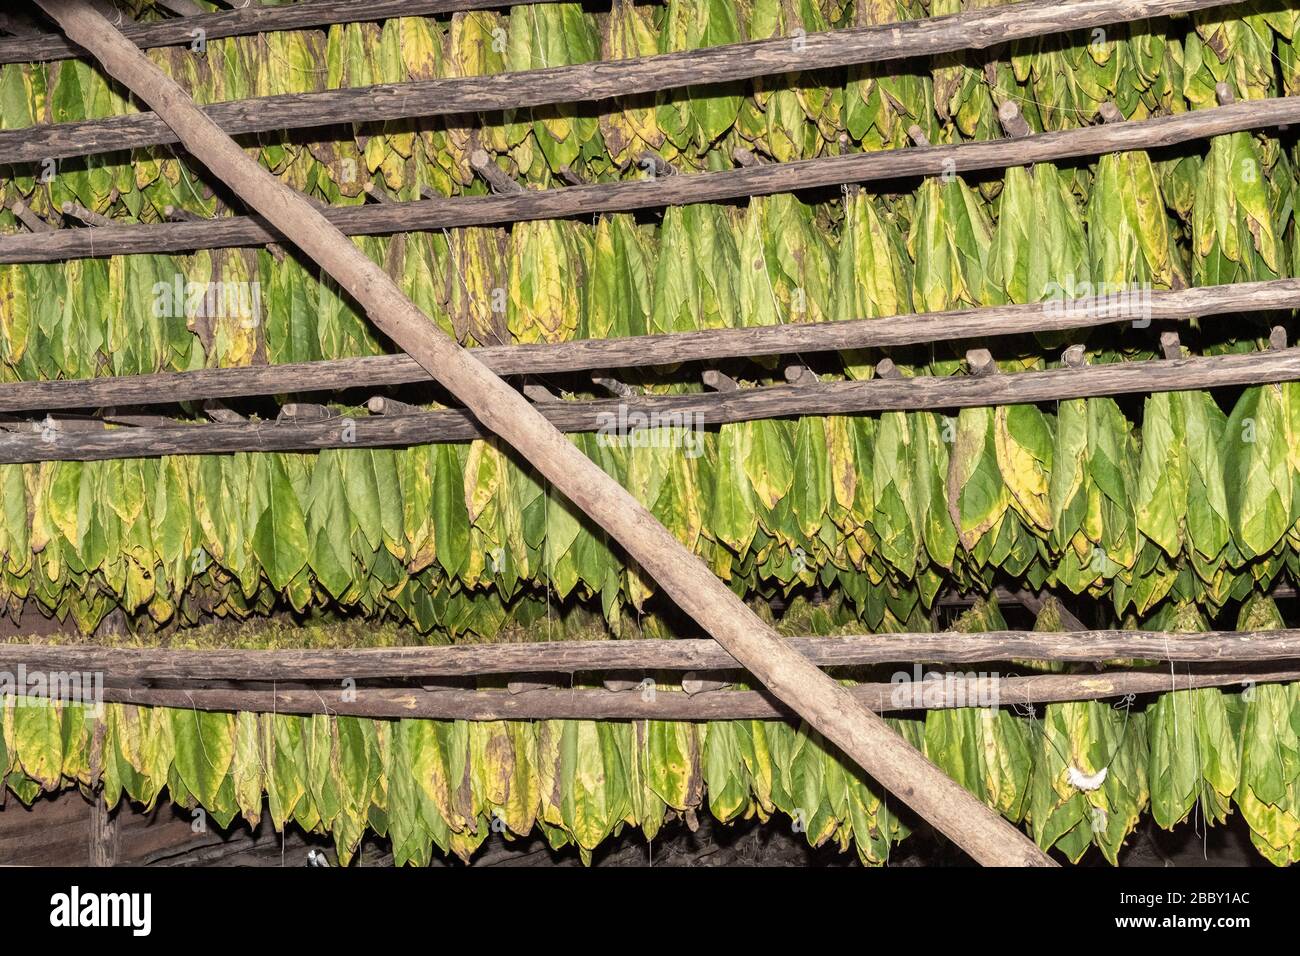 Tobacco Leaves Drying, Hector Luis Prieto Tobacco Plantation, San Juan y Martinez, Pinar del Rio Province, Cuba Stock Photo